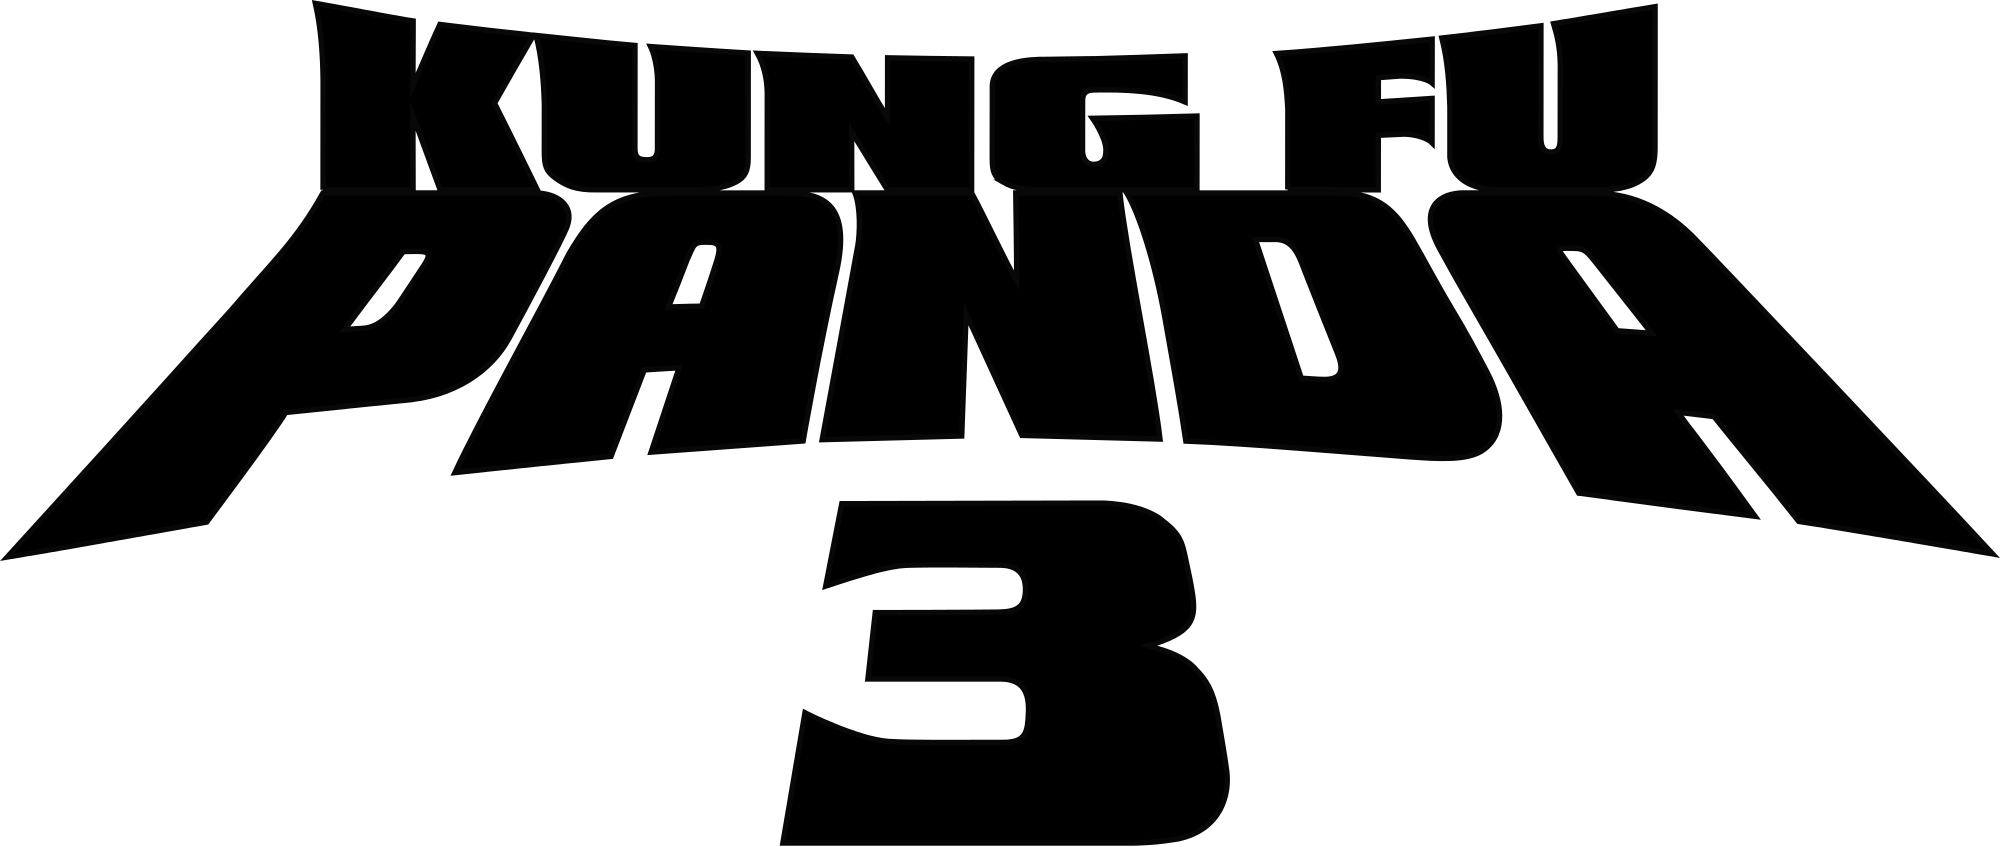 Kung Fu Panda Logo - Kung Fu Panda 3 logo.svg